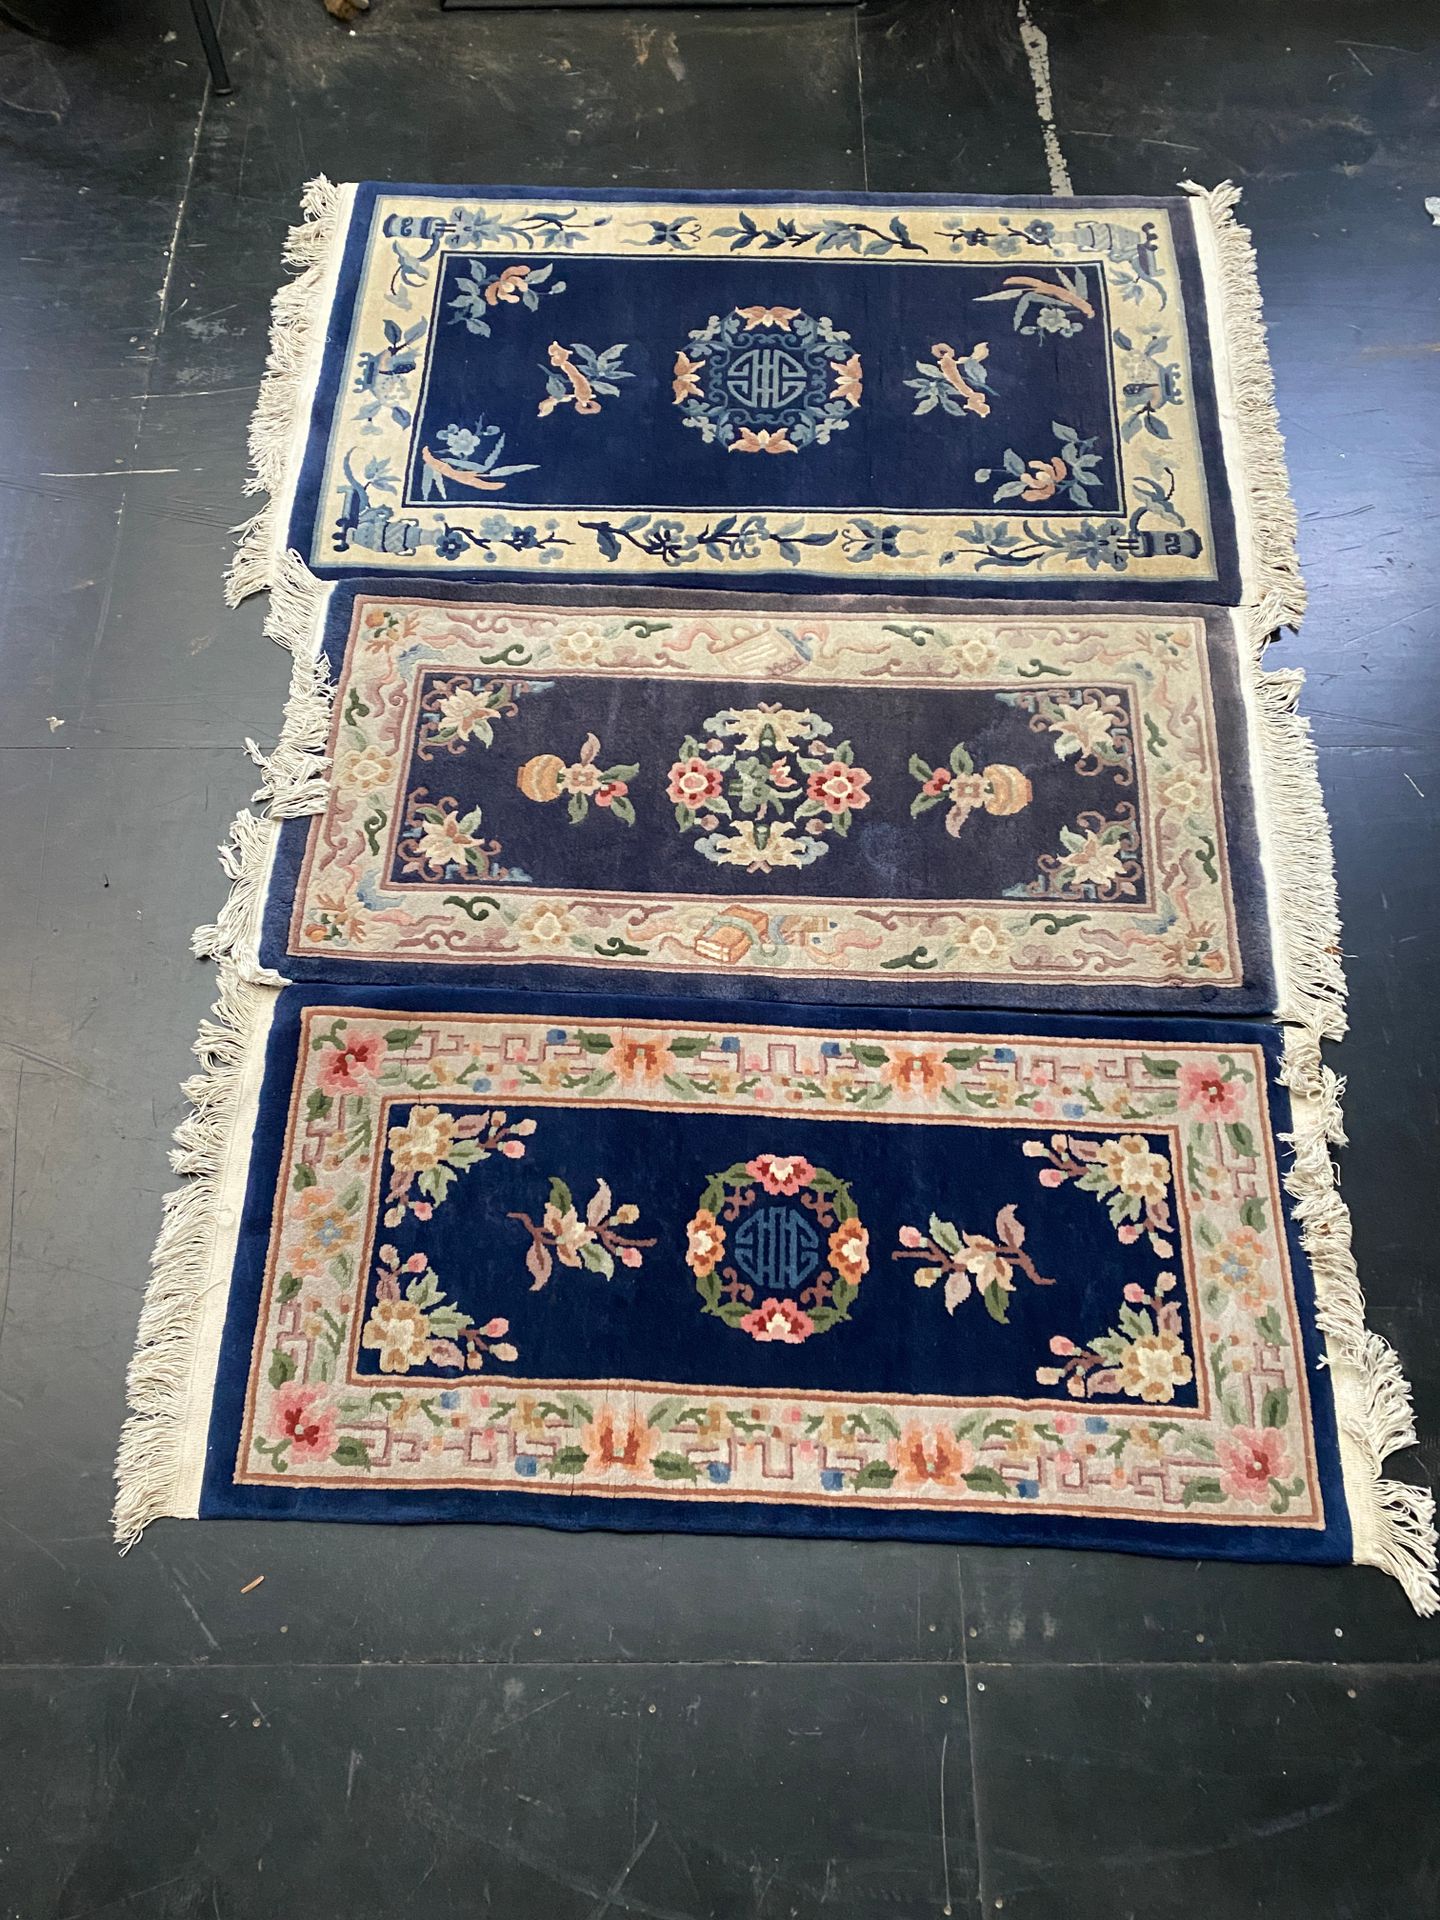 Null Conjunto de tres alfombras chinas con fondo azul

160 x 94 cm (el más grand&hellip;